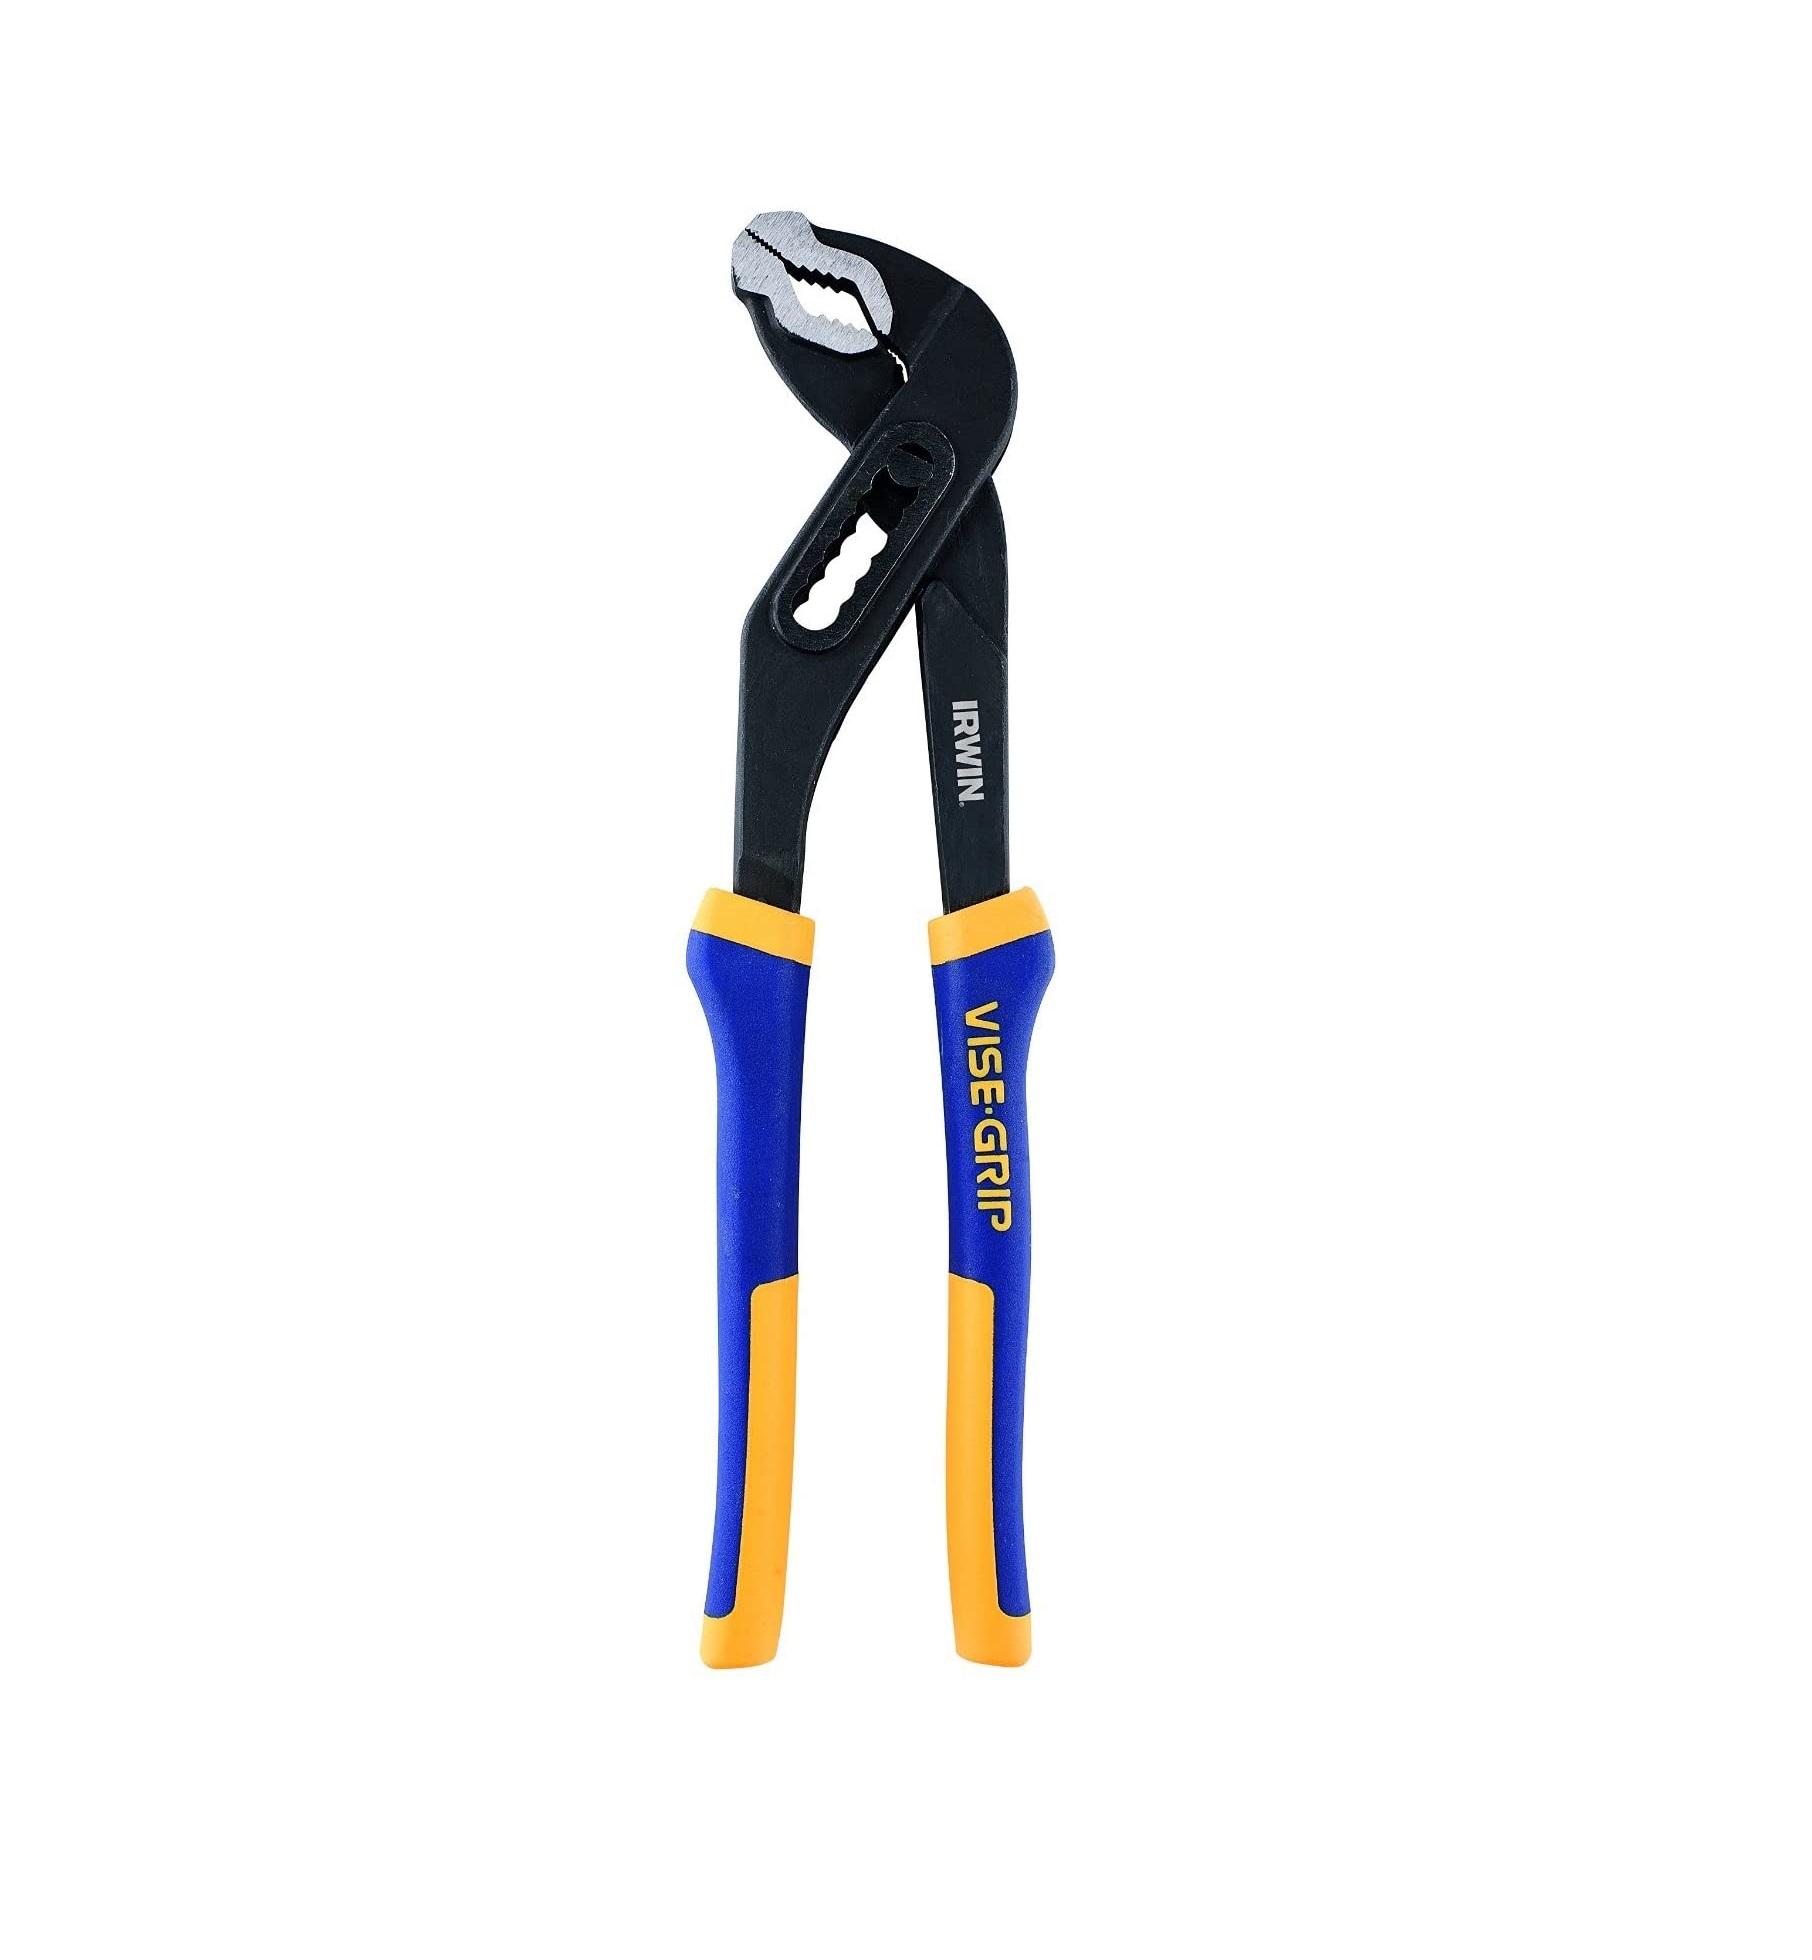 10-Inch Irwin Tools 4935513 Vise-Grip Water Pump Pliers